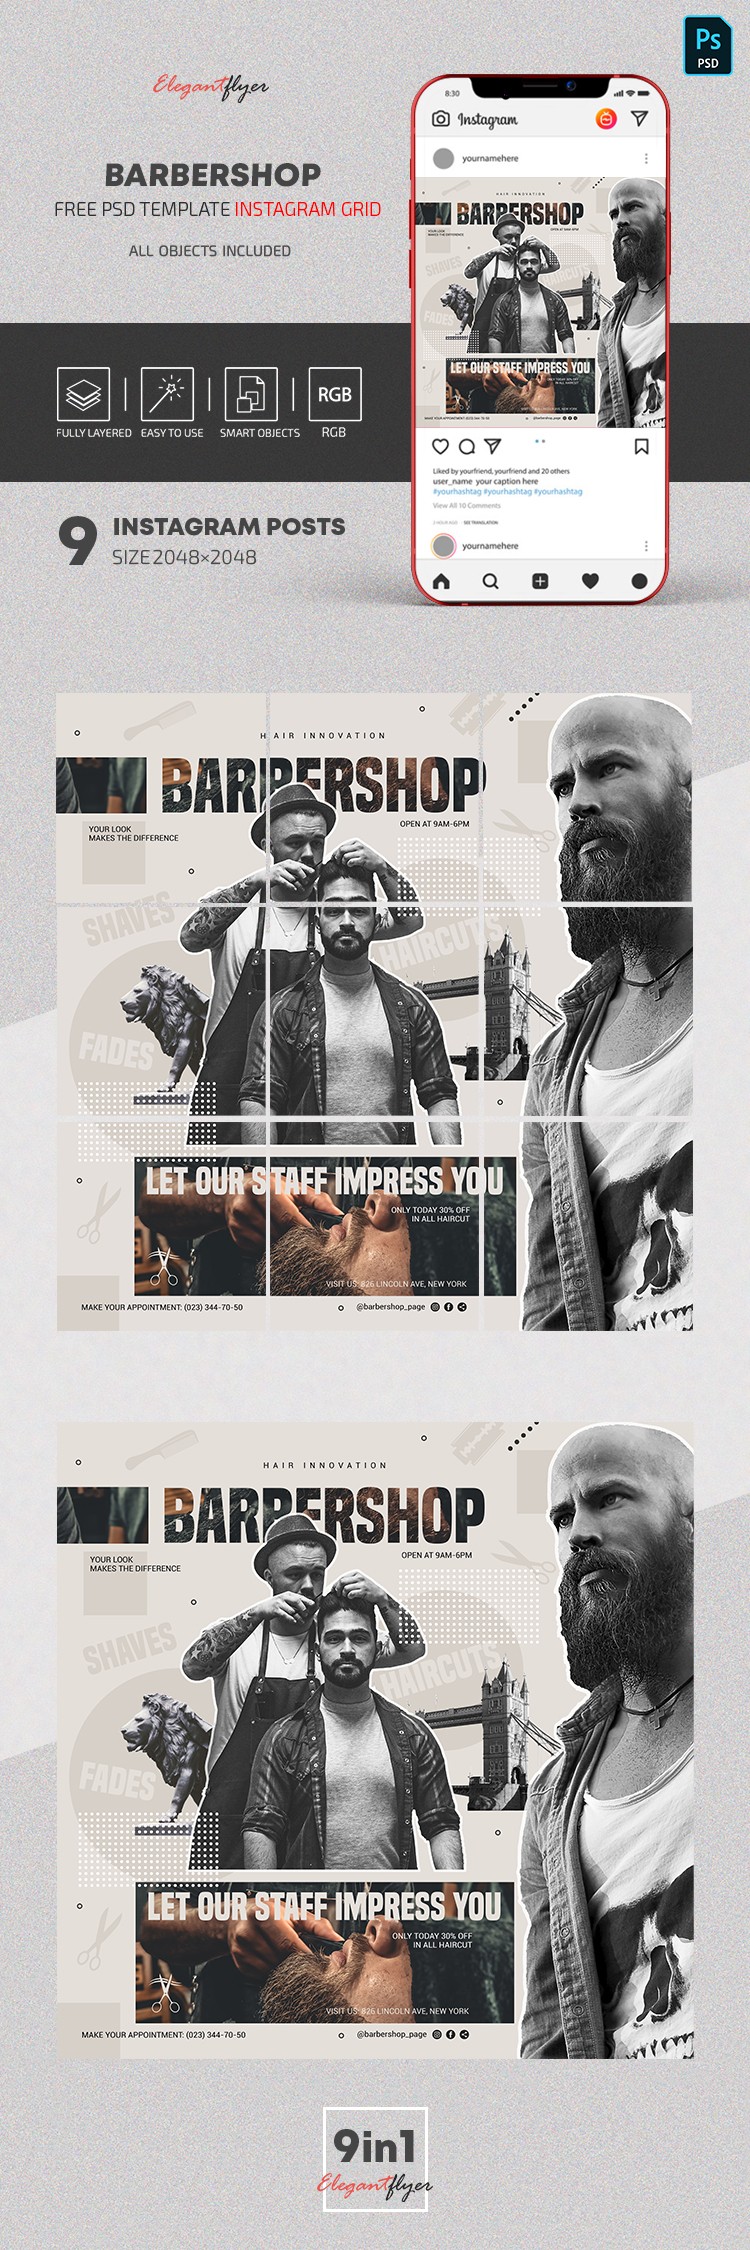 Barbershop Instagram Grid by ElegantFlyer